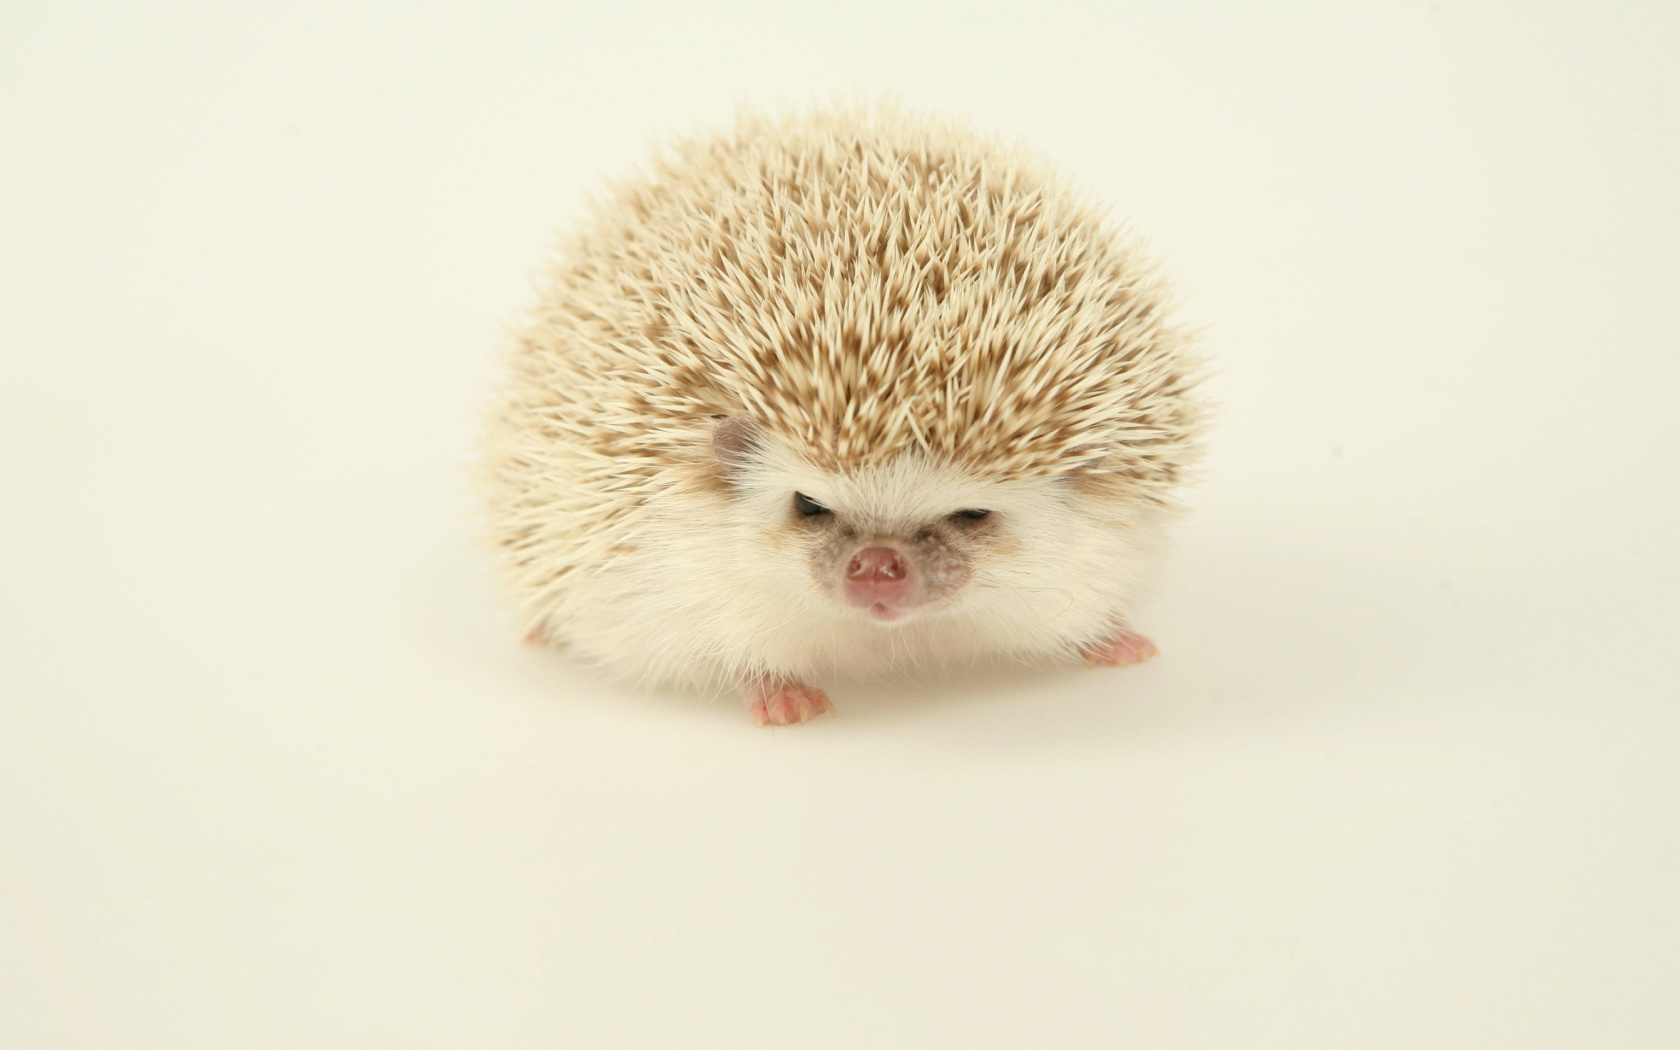 Evil hedgehog wallpaper 1680x1050